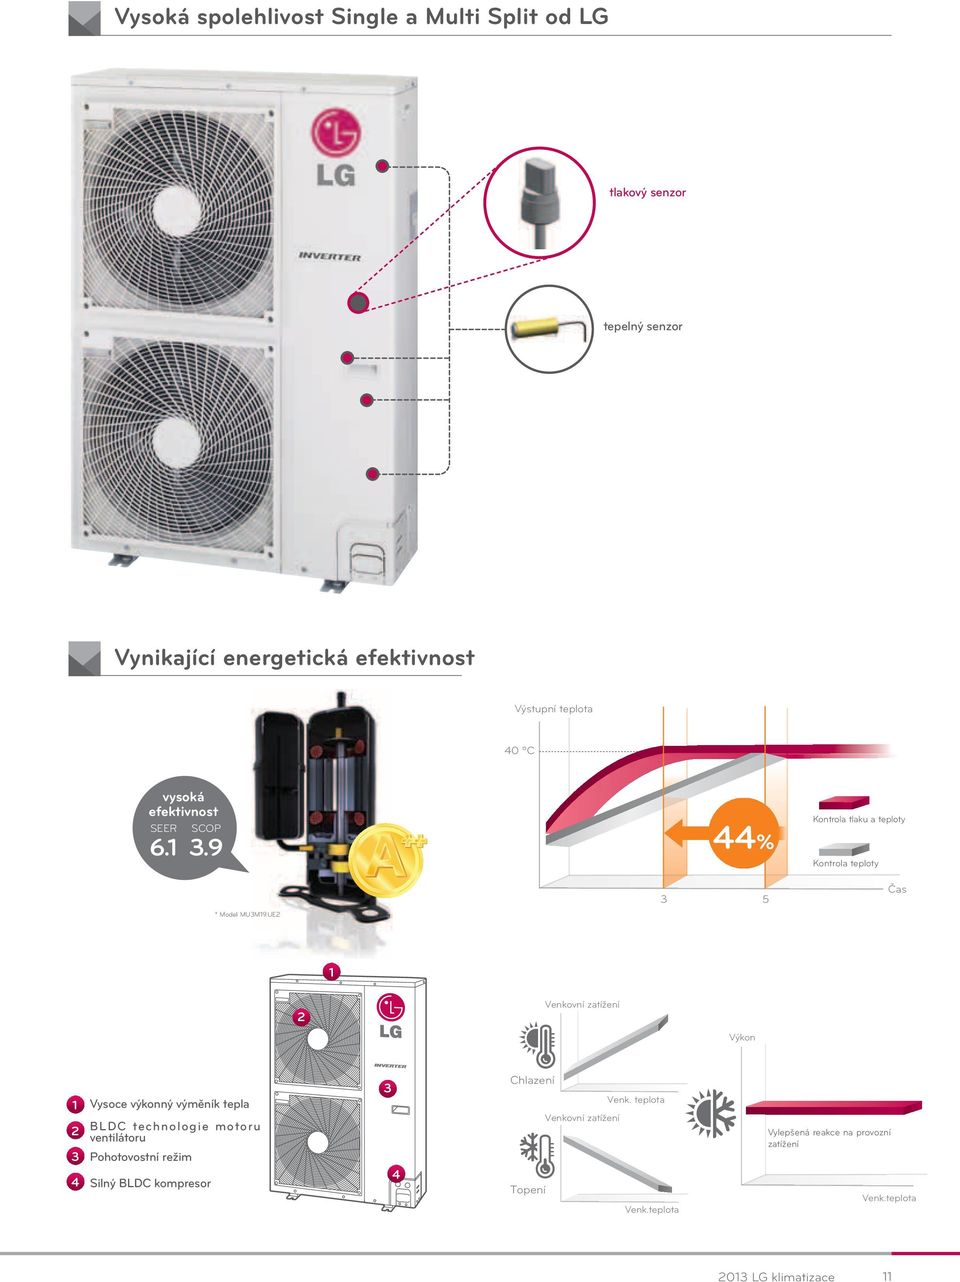 UE2 3 5 Čas 1 2 Venkovní zatížení Výkon 1 2 3 4 Vysoce výkonný výměník tepla BLDC technologie motoru ventilátoru Pohotovostní